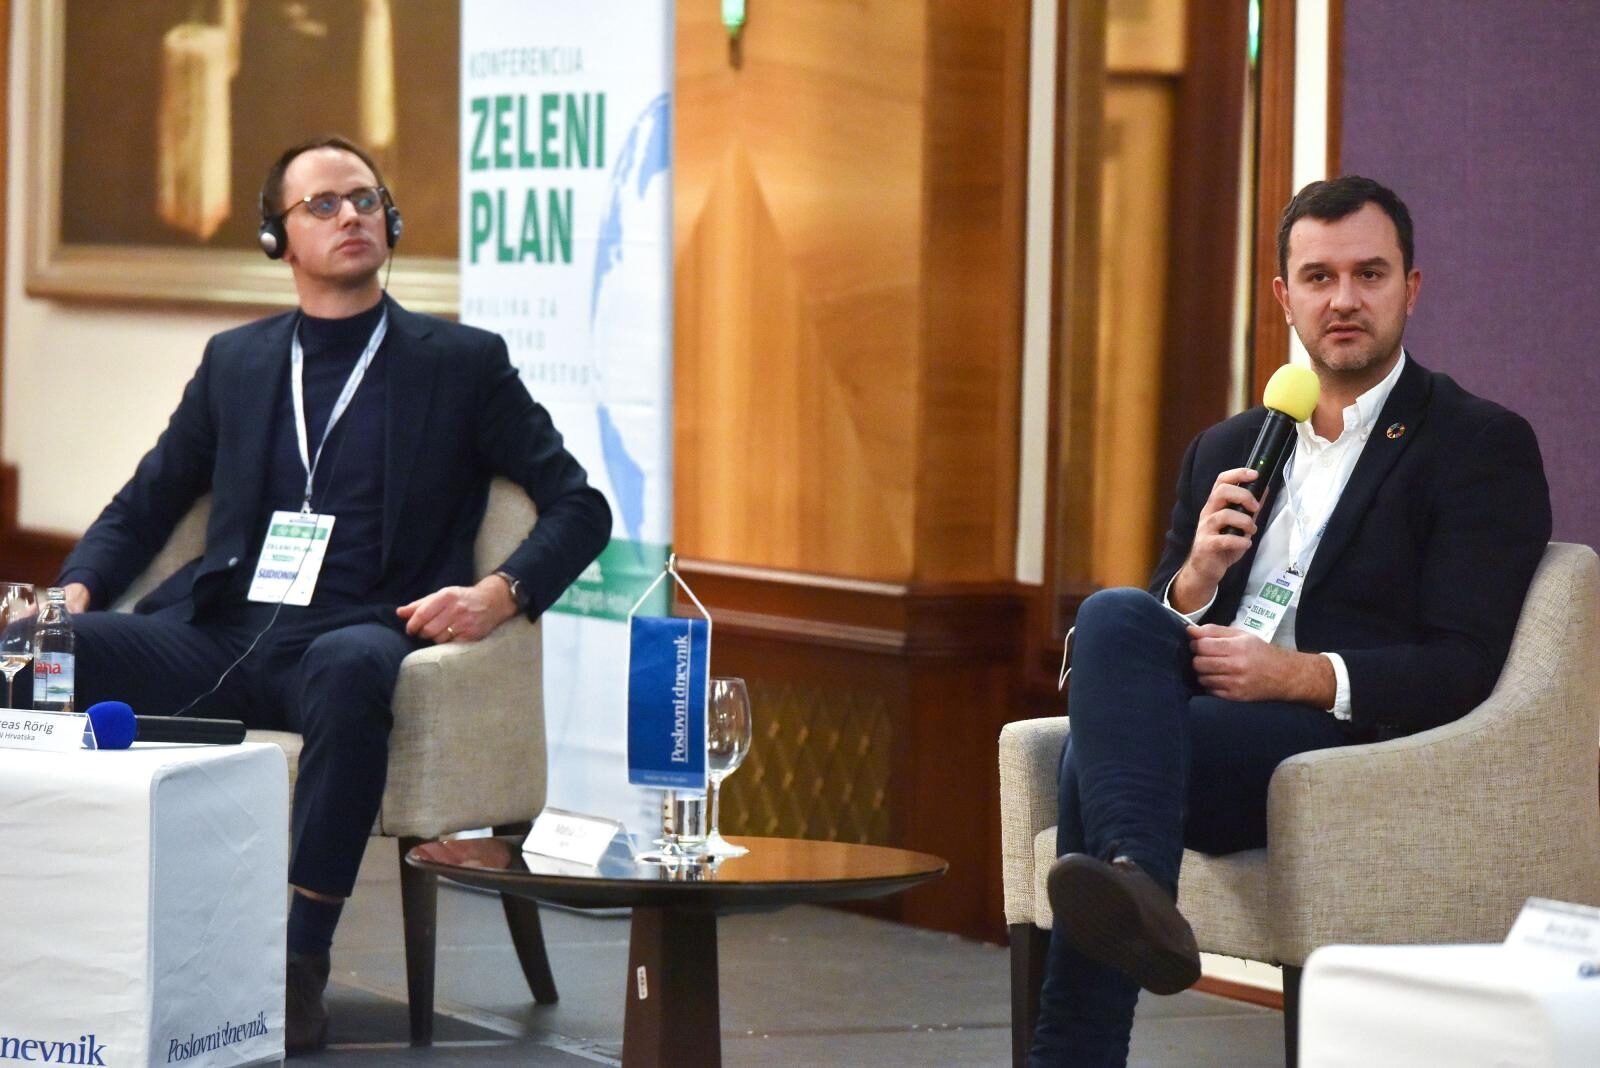 Zagreb: Konferencija Zeleni plan - prilika za Hrvatsko gospodarstvo